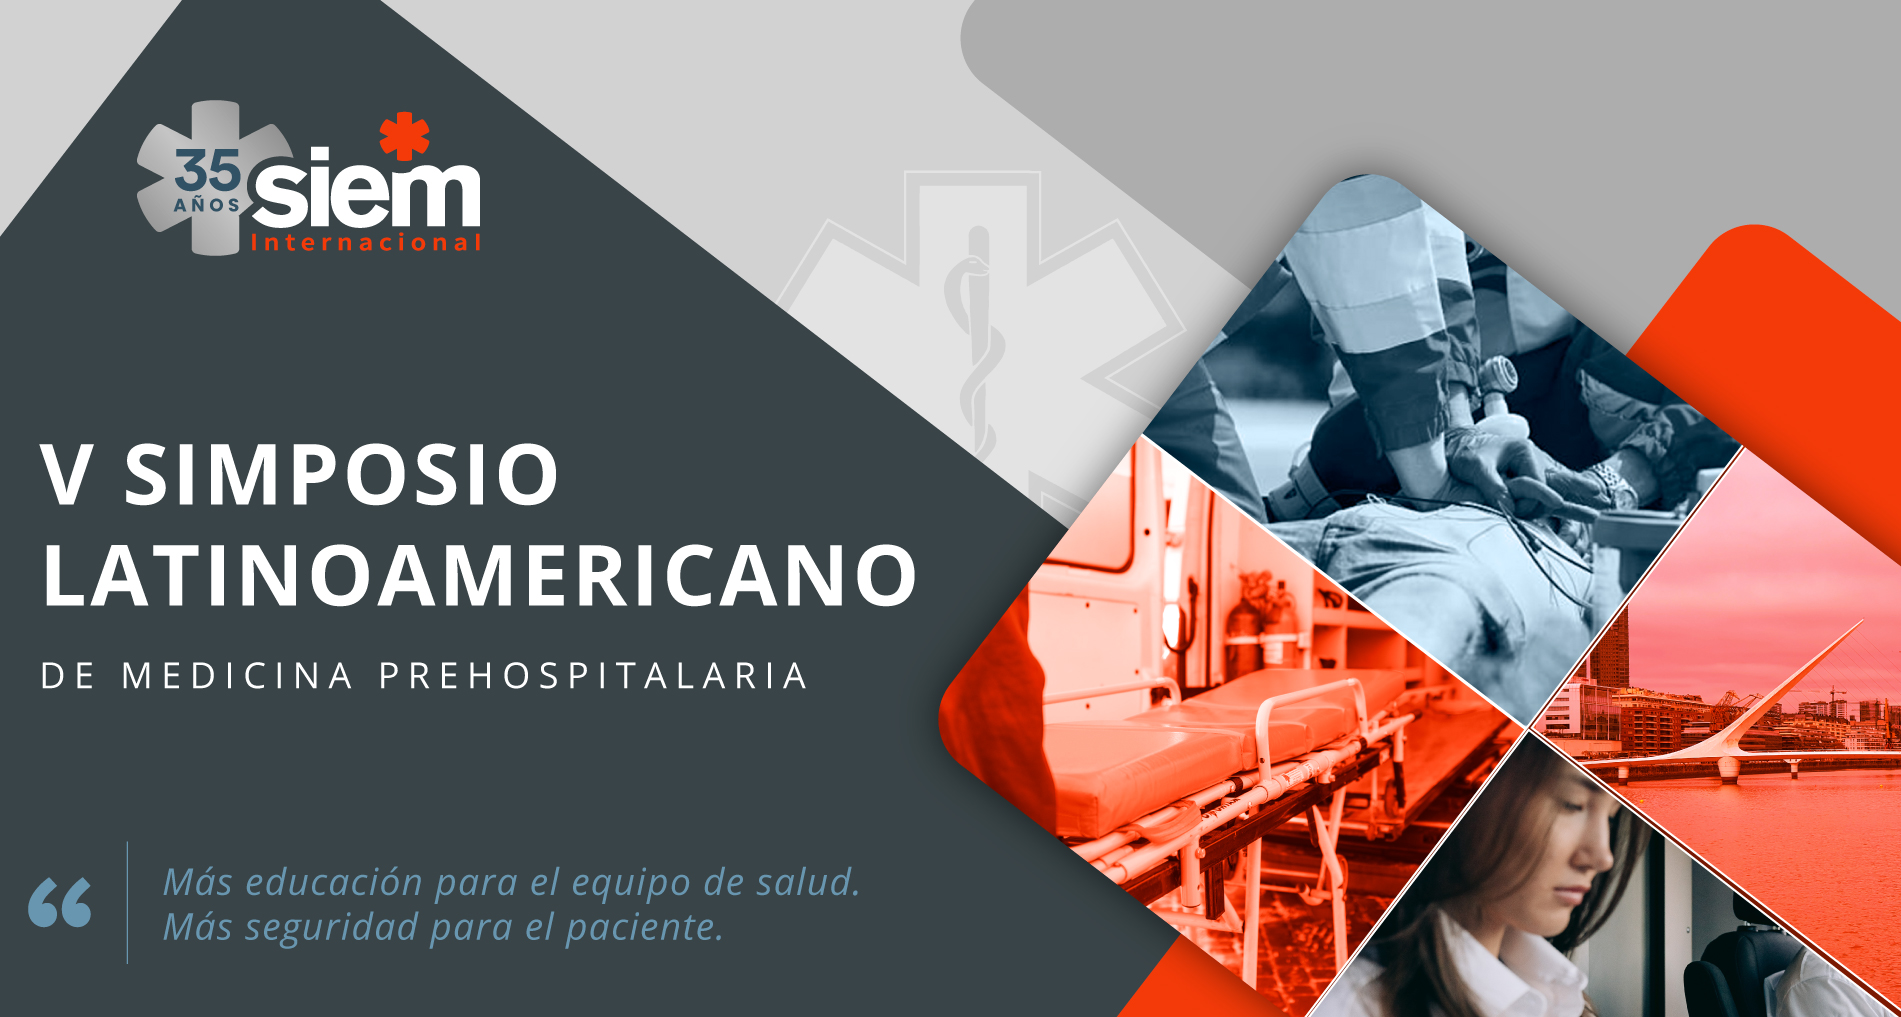 V Simposio Latinoamericano de Medicina Prehospitalaria @ Distrito Barracas